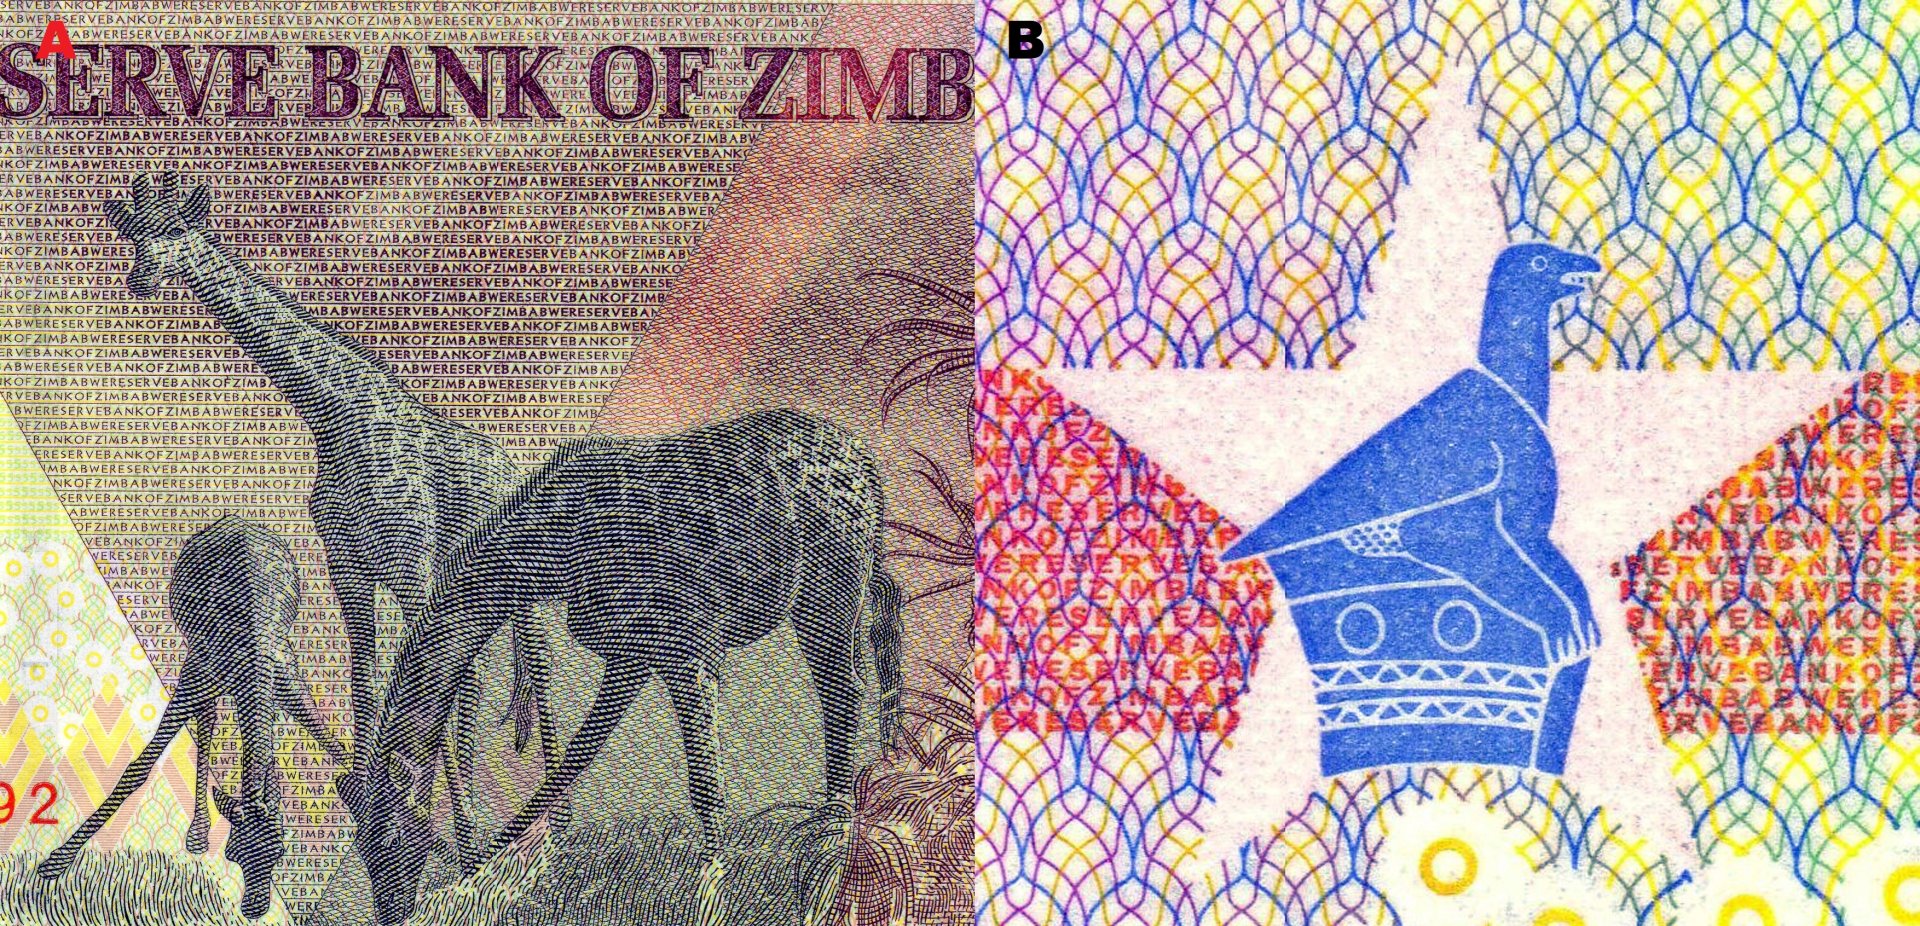 5. A) Hlavní motiv reverzu jsou tři jedinci žirafy masajské (Giraffa tippelskirchi). B) Soutisková značka ve tvaru hvězdy s vloženým obrazem kamenného ptáka Zimbabwe.